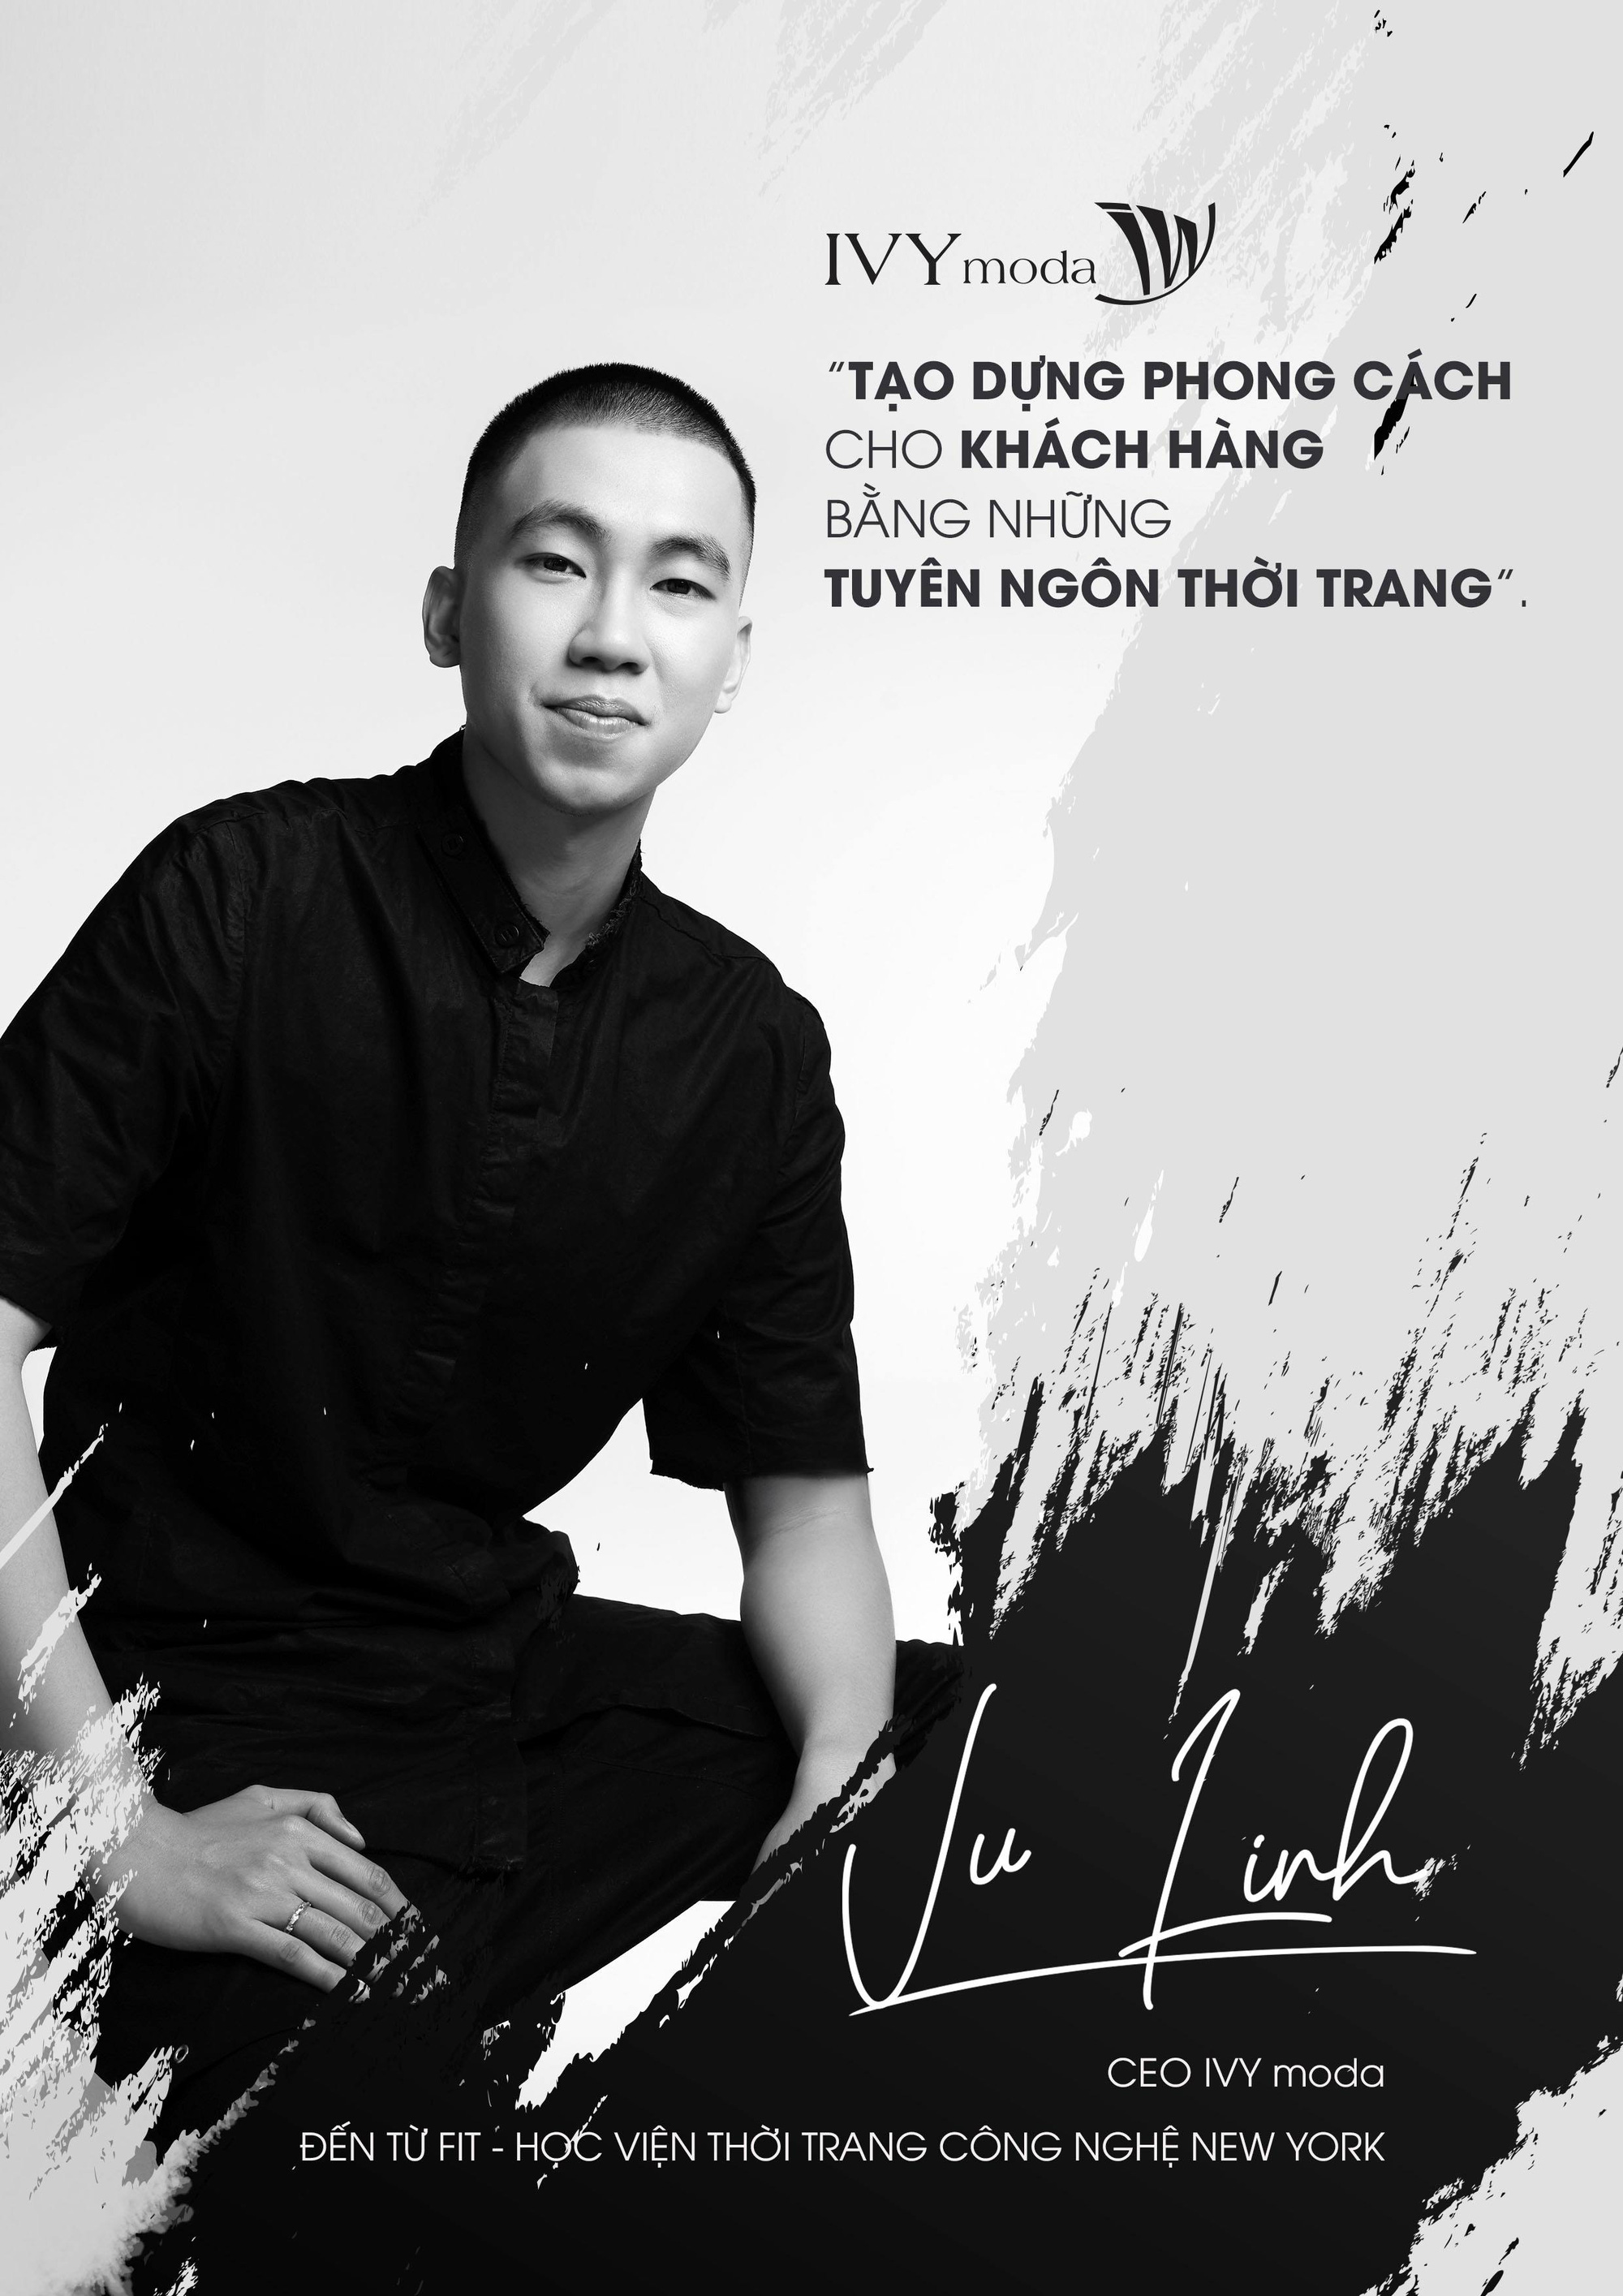 IVY moda trình làng digital show lần đầu tiên tại Việt Nam, Hoà Minzy sẽ catwalk trên sàn runway với đôi giày 30cm? - Ảnh 1.